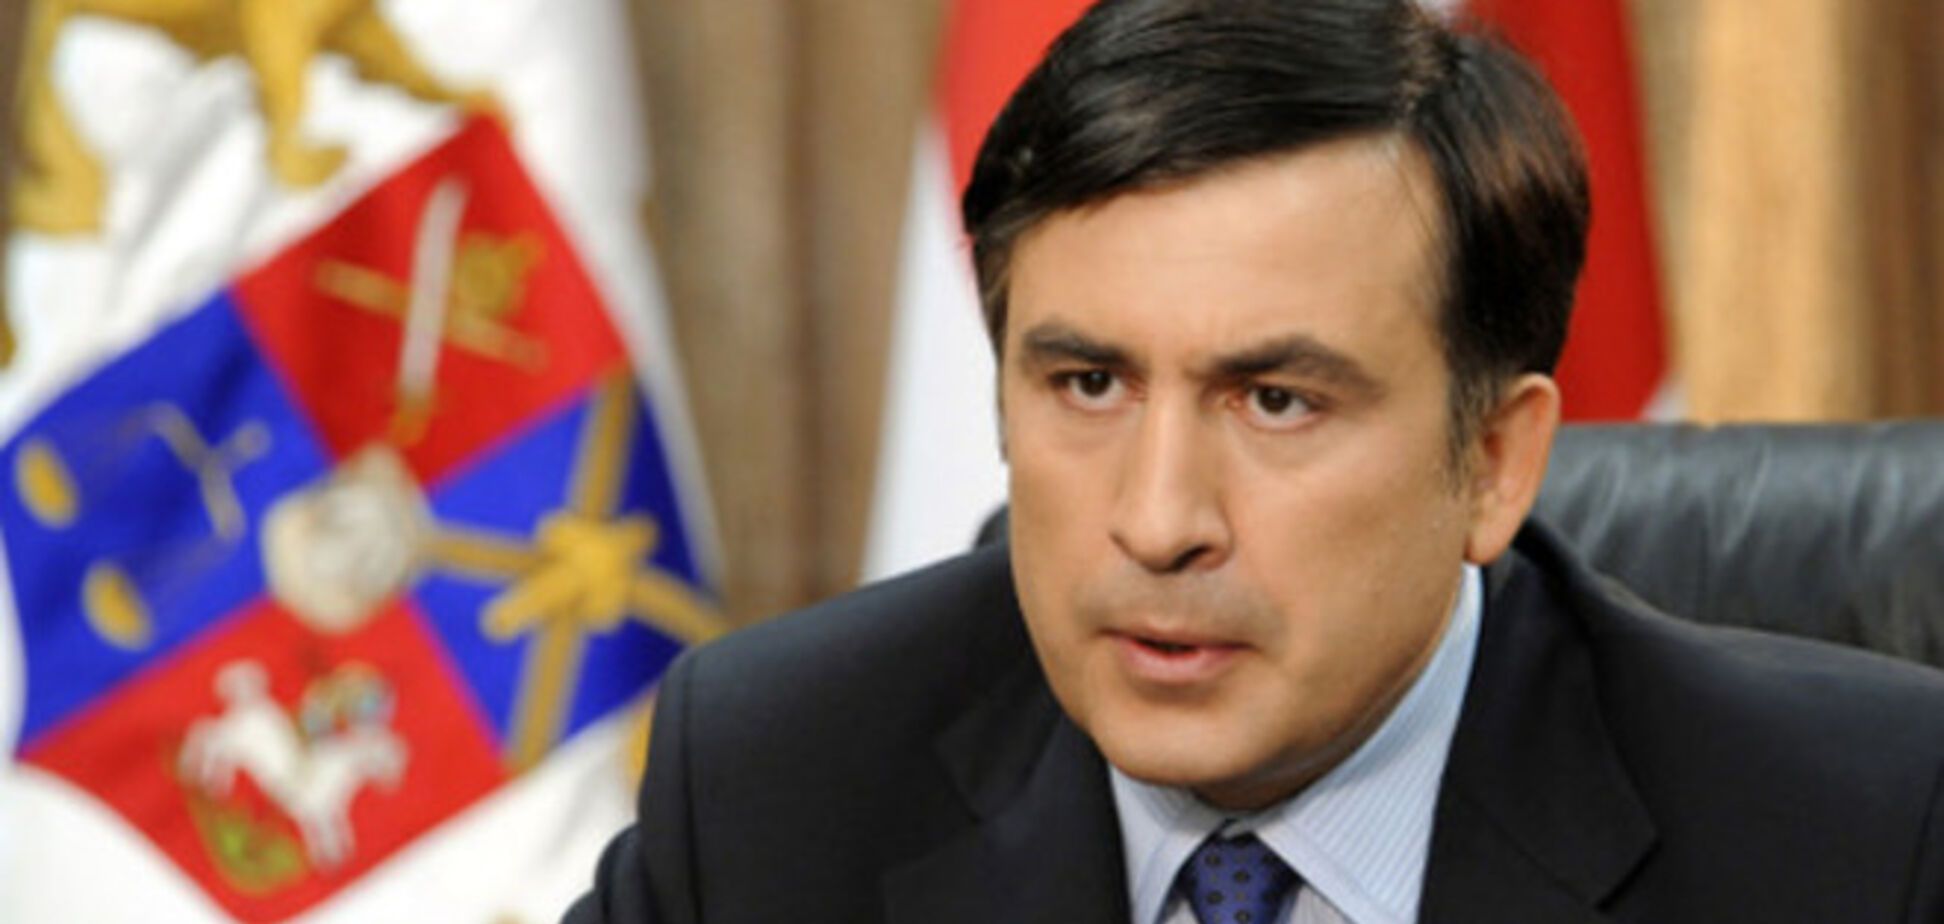 Назначение Саакашвили советником Порошенко не направлено против Грузии - посол